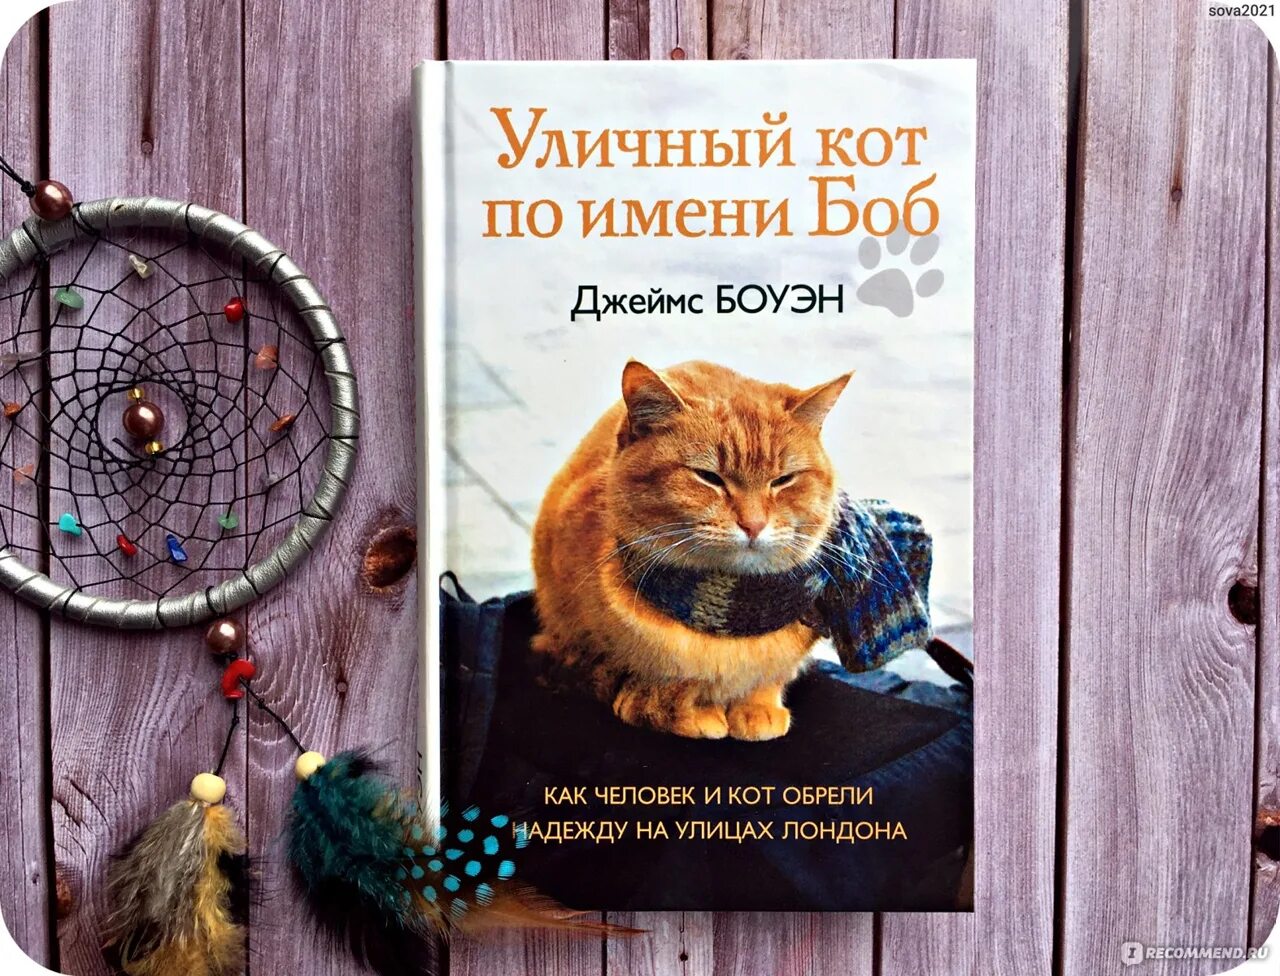 Книга про боба. Уличный кот по имени Боб книга.